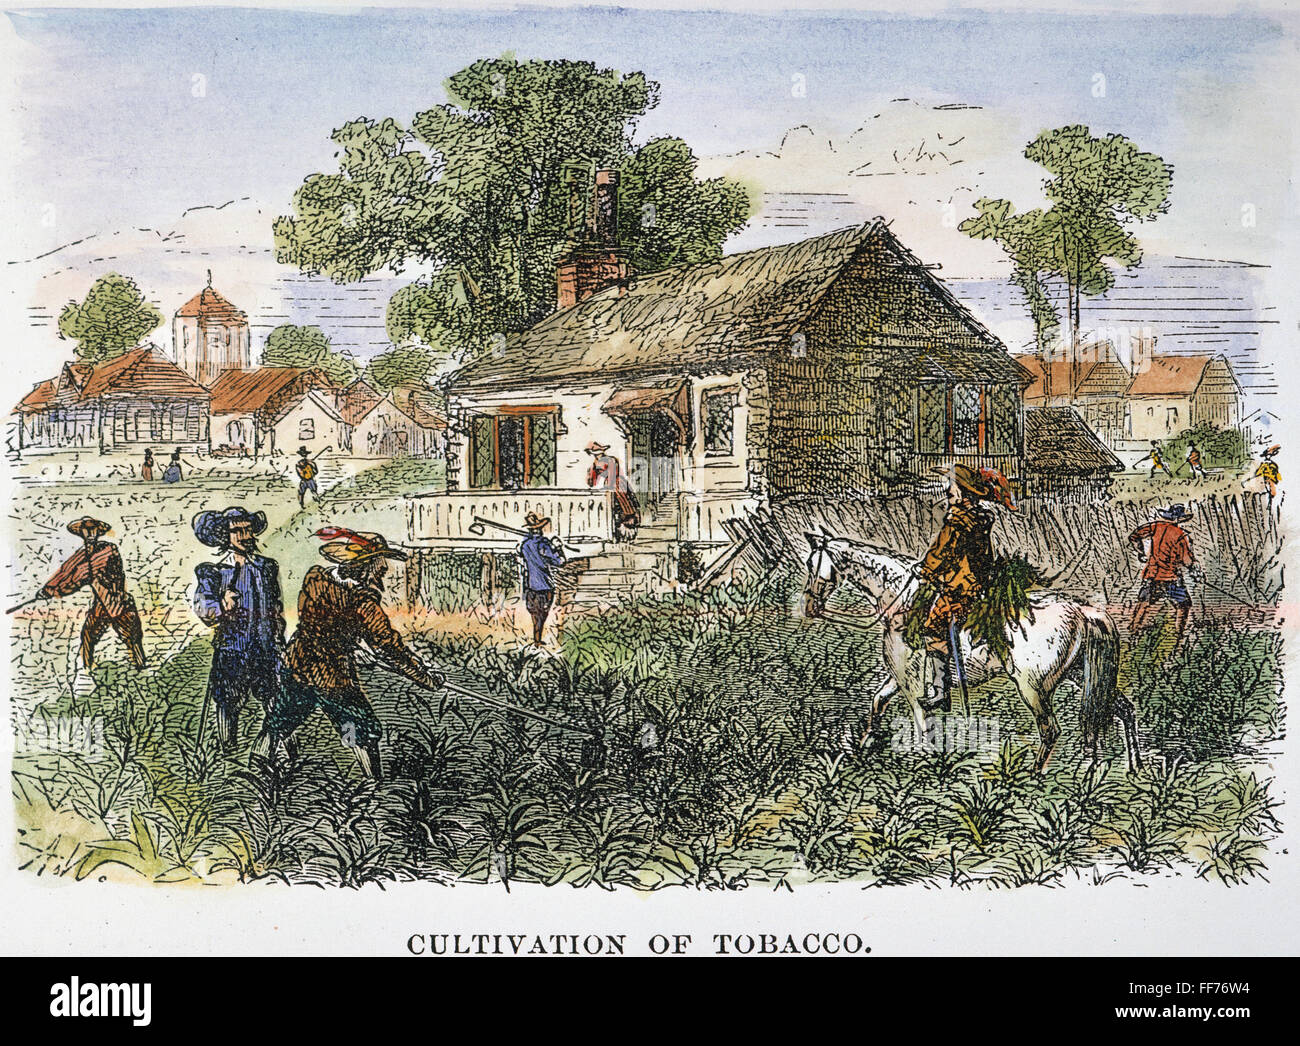 Потомок колонистов. Южане Плантаторы США 19 век. Плантации табака в Америке 18 век. Аграрное хозяйство Англии 18-19 век. Аграрный сектор Англии 19 век.